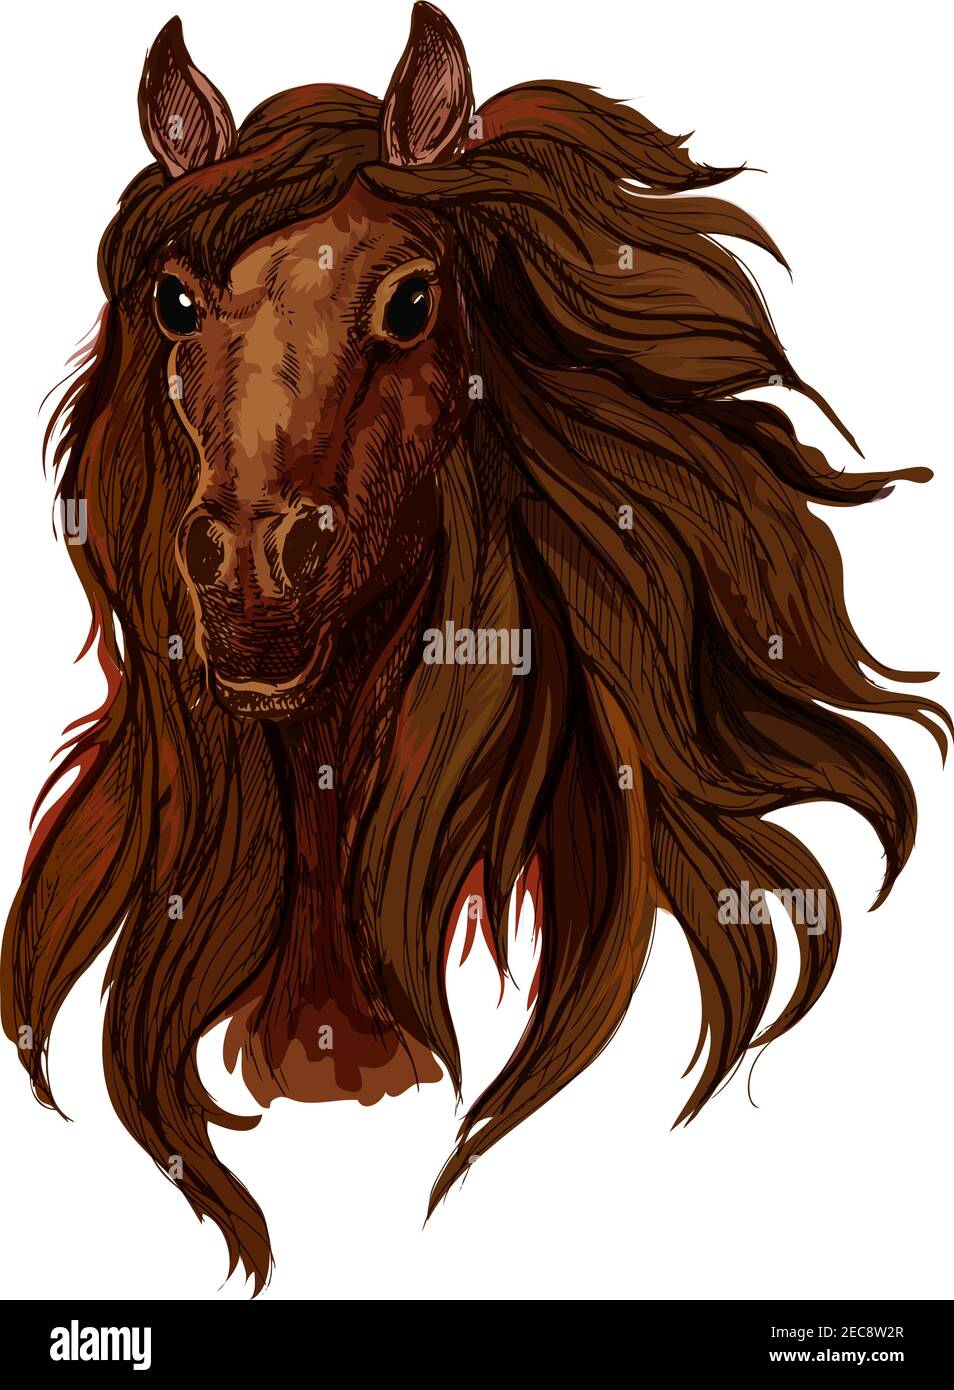 Braun Kastanie Laufpferd Porträt. Red Bay tobende Mustang mit langen welligen Mähne und glänzend schwarzen Augen Stock Vektor